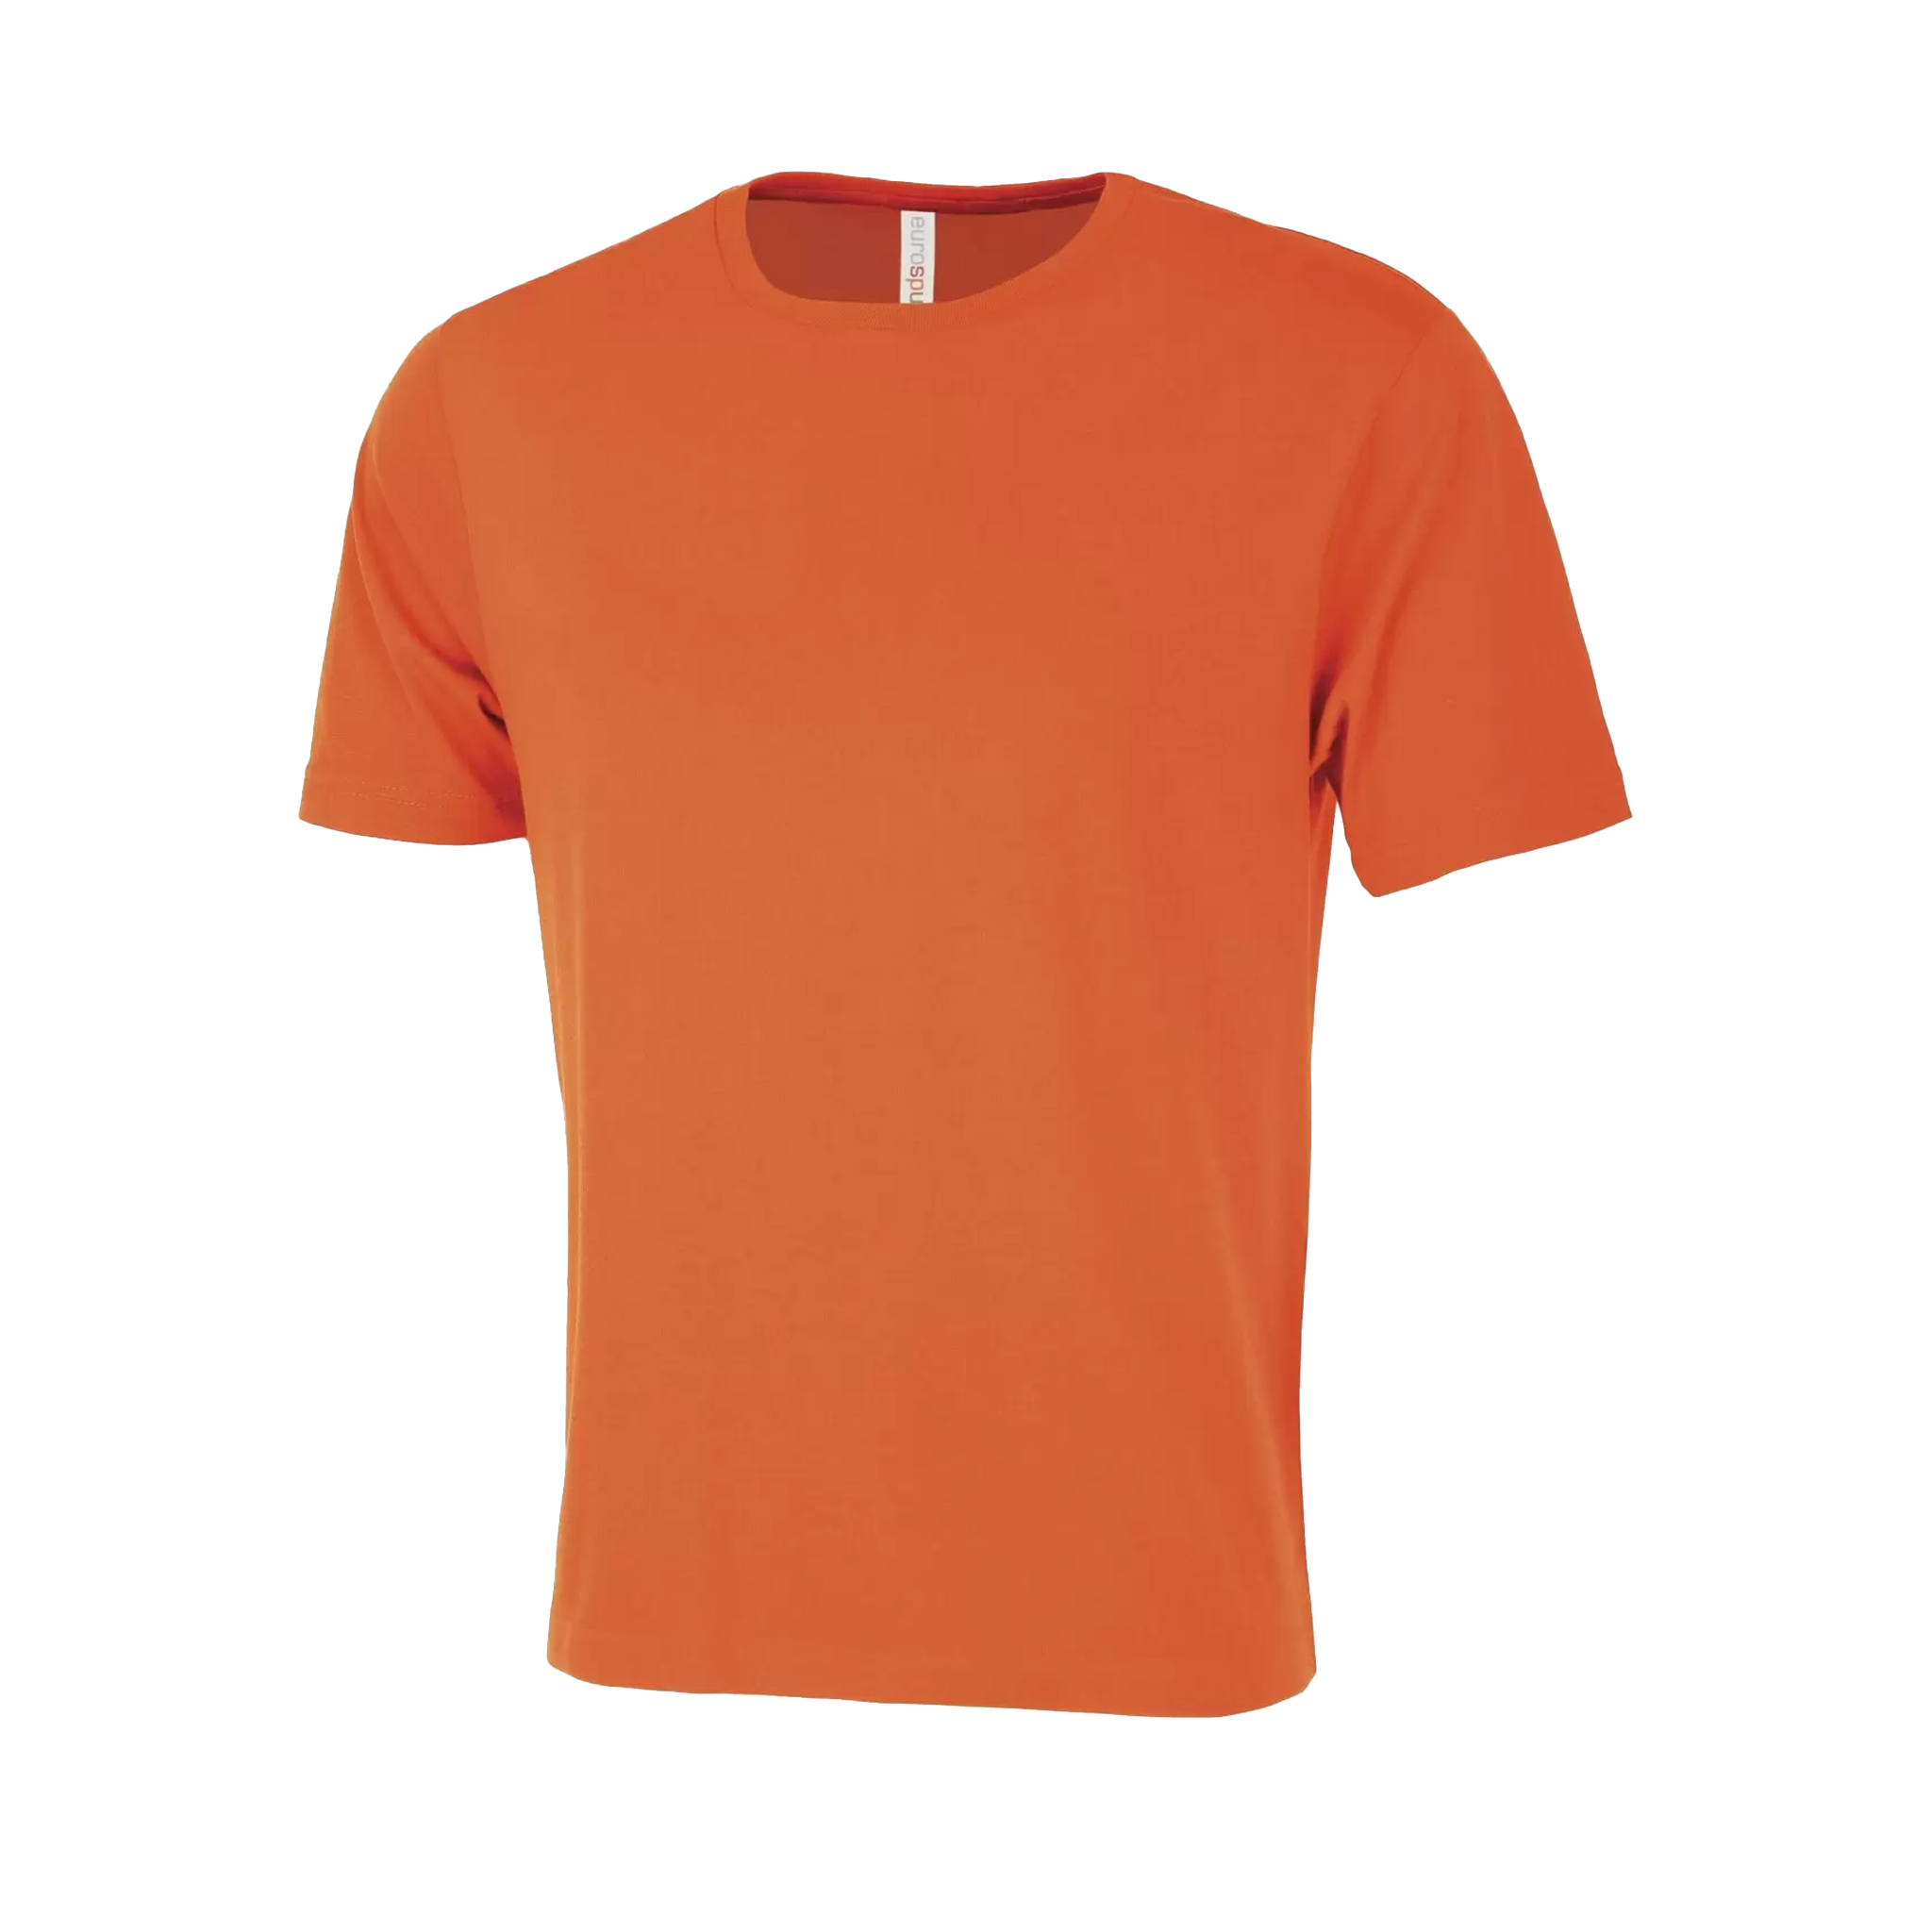 ATC Eurospun Ring Spun T-Shirt - Men's Sizing XS-4XL - Orange